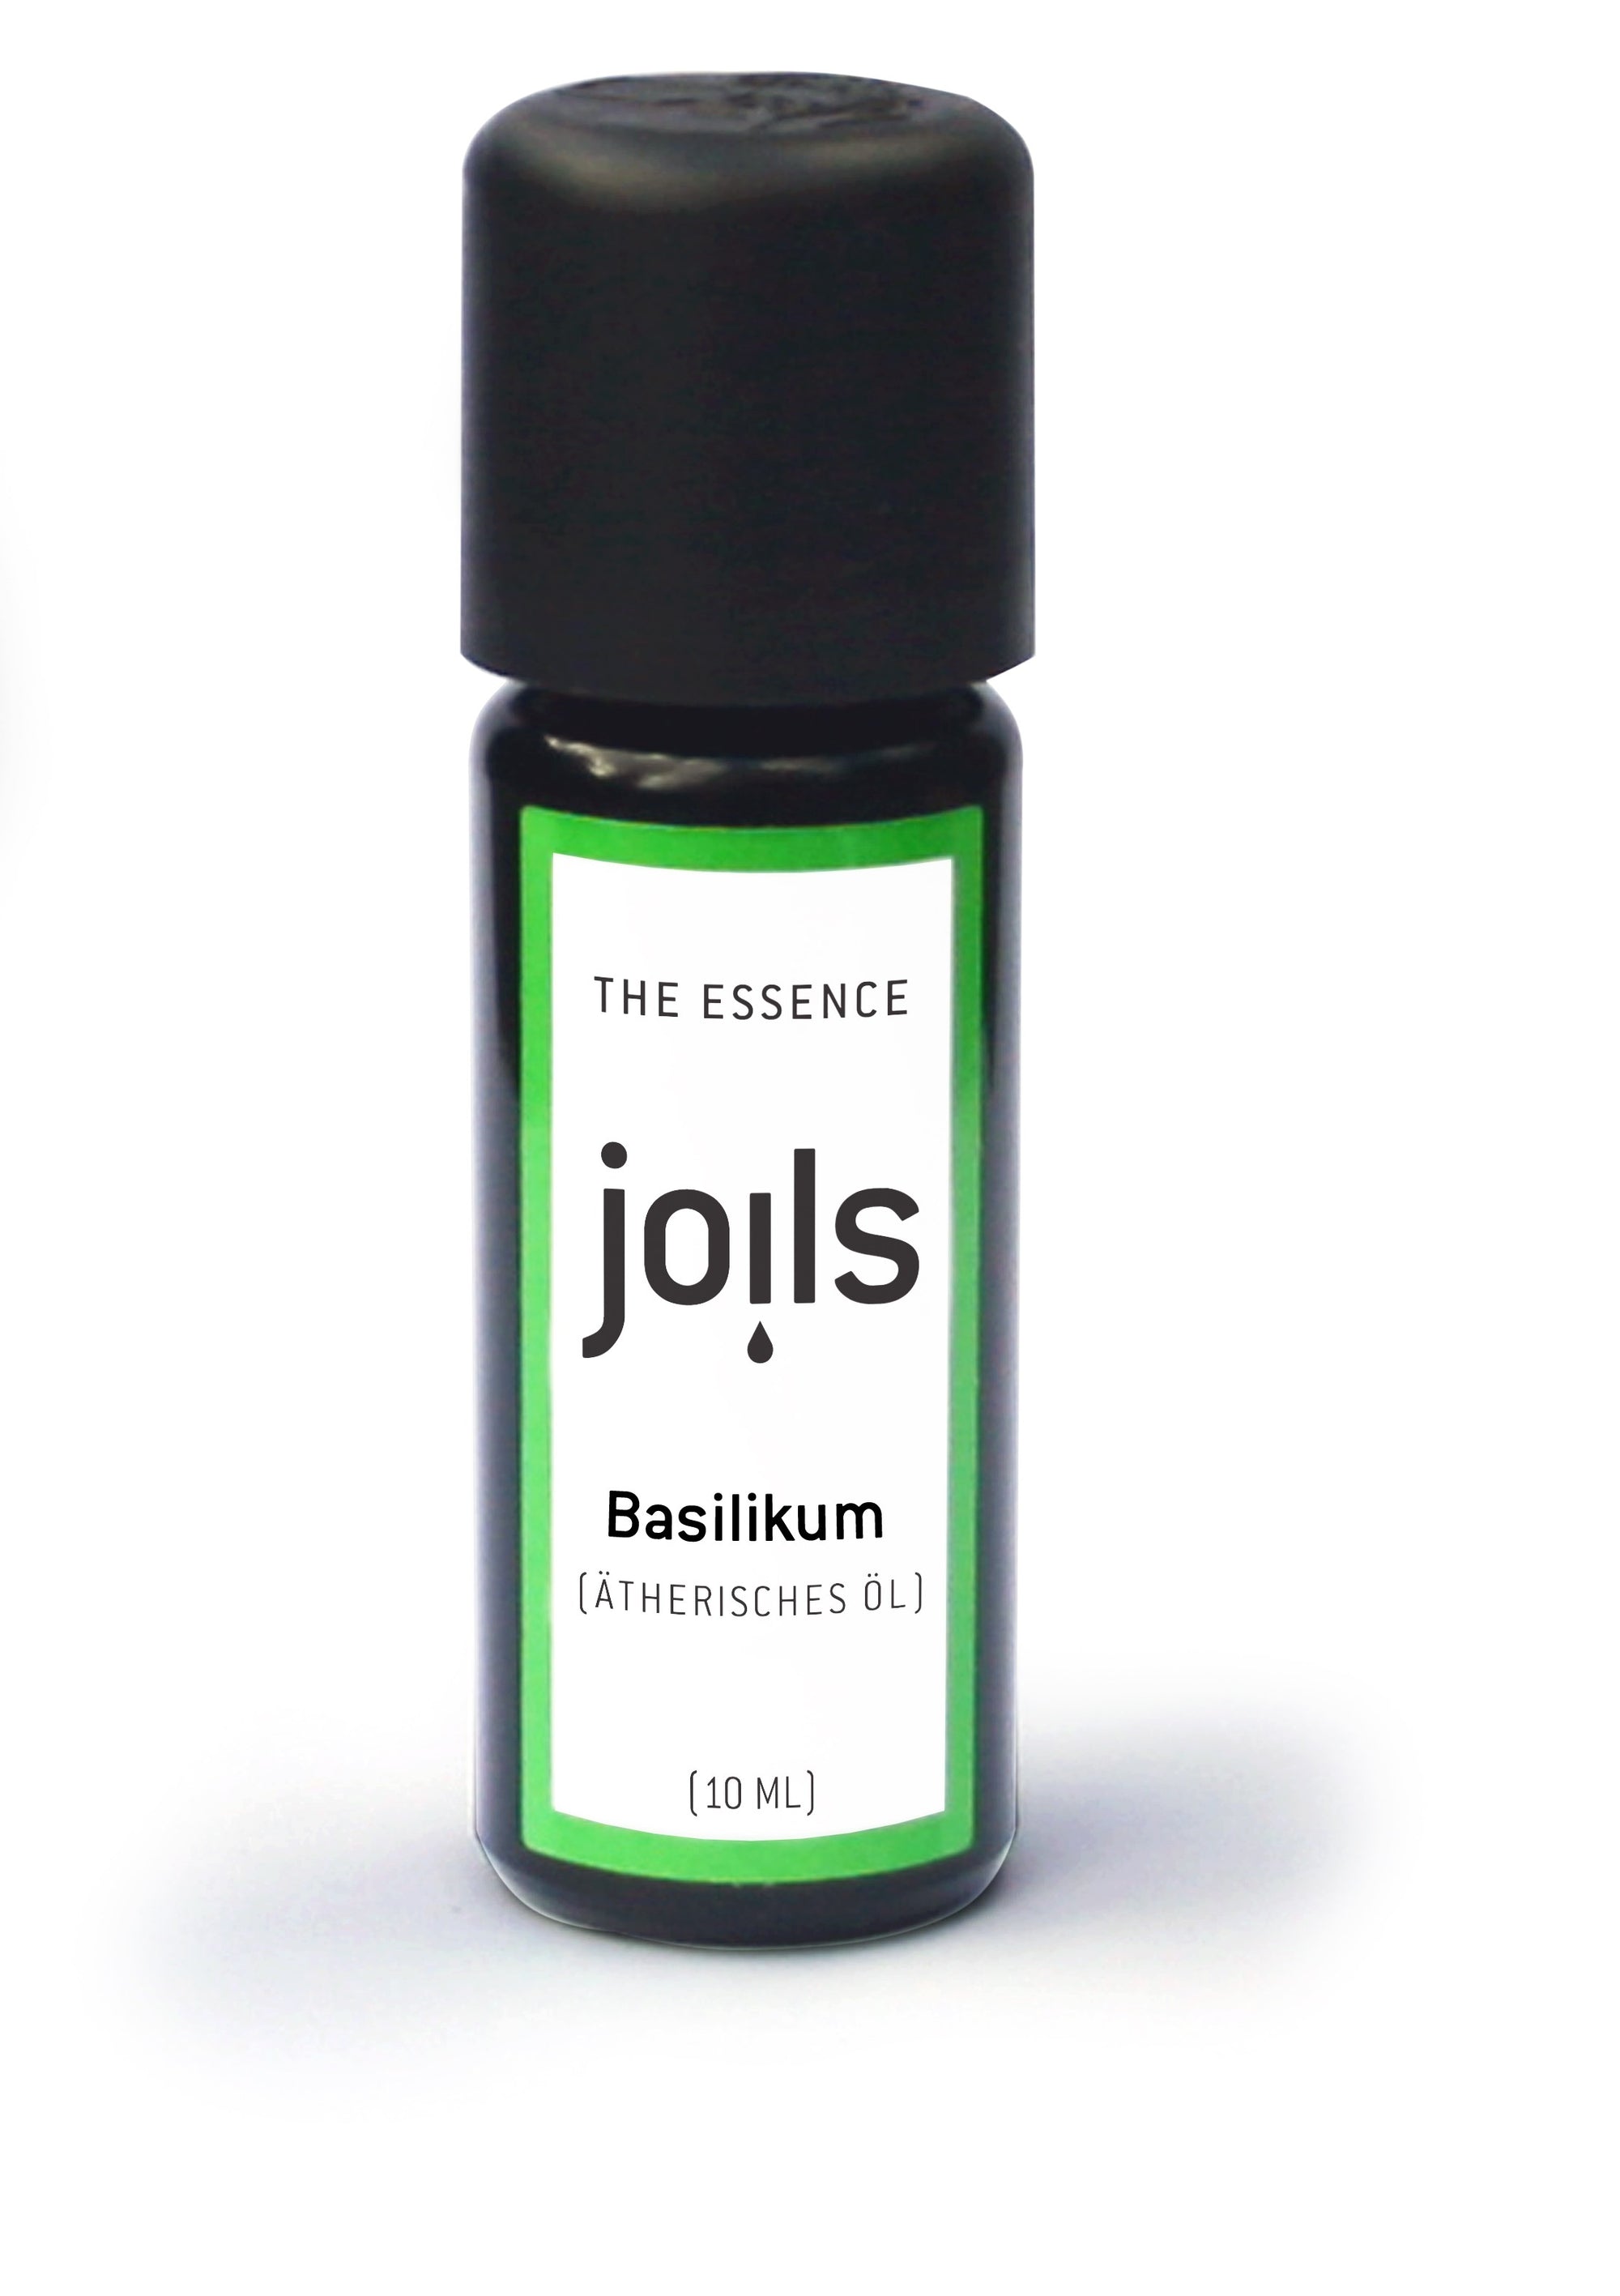 BASILIKUM 10ml - Joils Duftöl für Aromatherapie aus 100% naturreinen ätherischen  Ölen - Das Aromaöl für Duftlampe &amp; Diffuser im Joils Shop